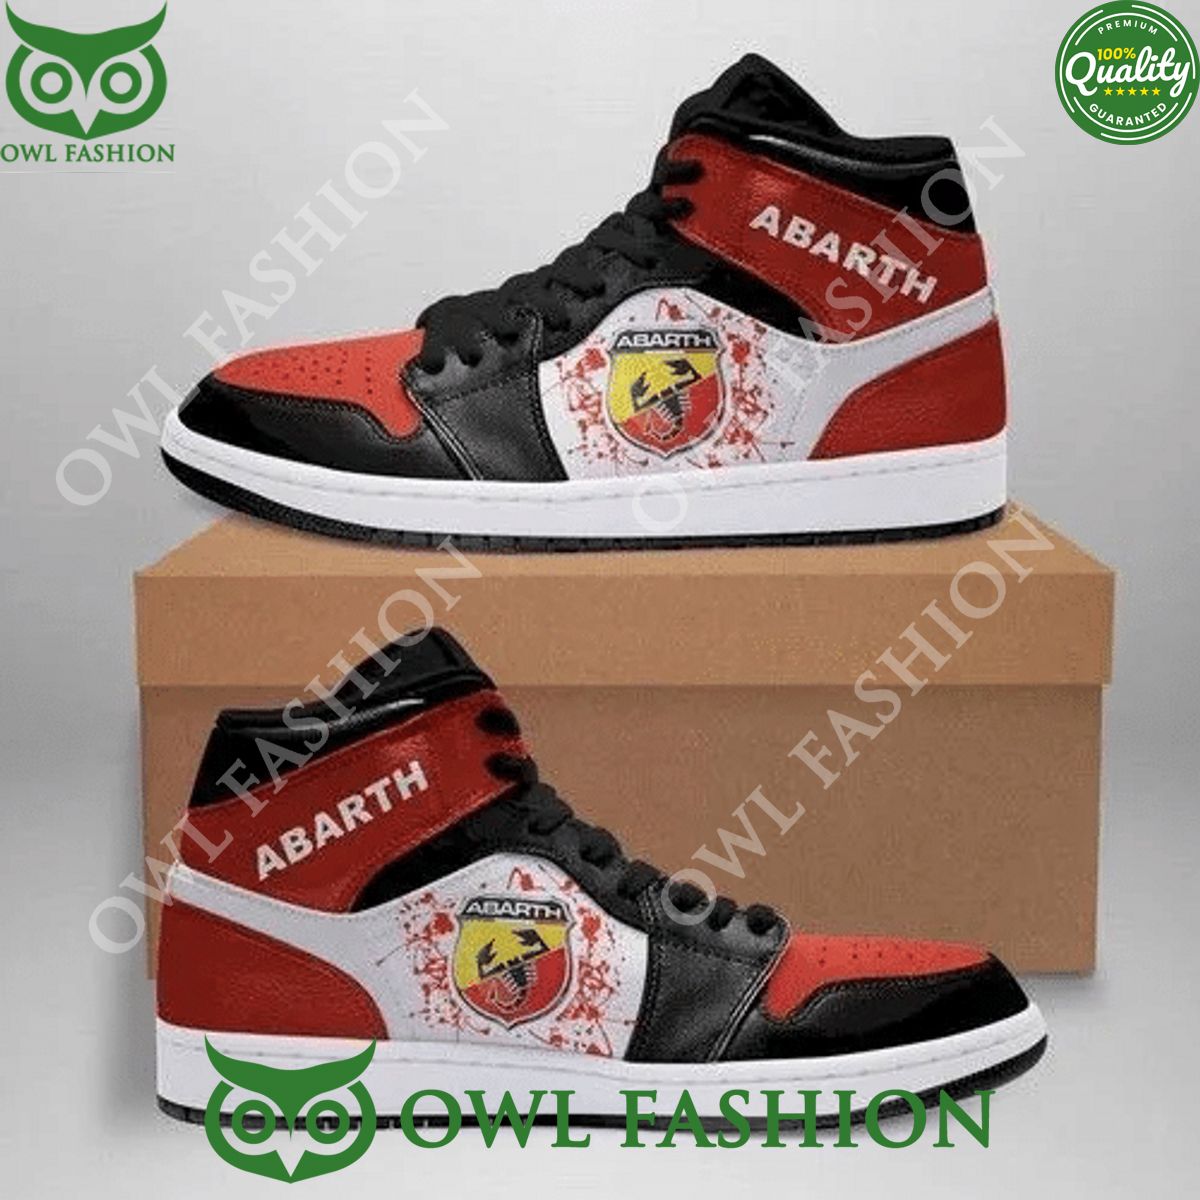 Abarth Automobile Car Brand Air Jordan Sneakers High Top